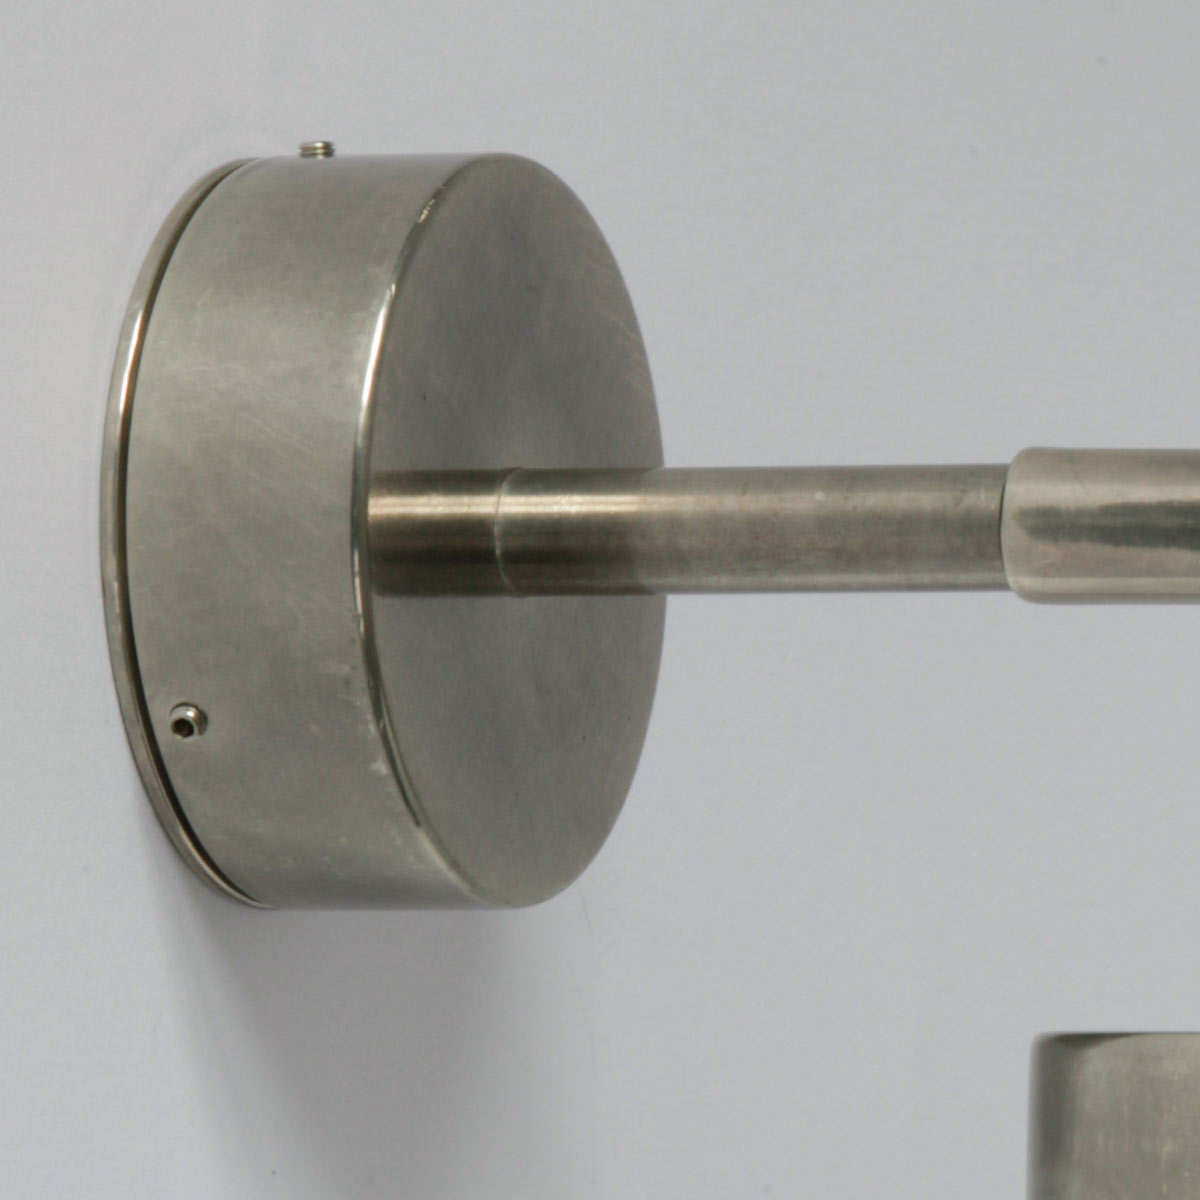 Moderne Badezimmer-Wandlampe mit Glaskugel, IP65: Messing alt-silbern patiniert